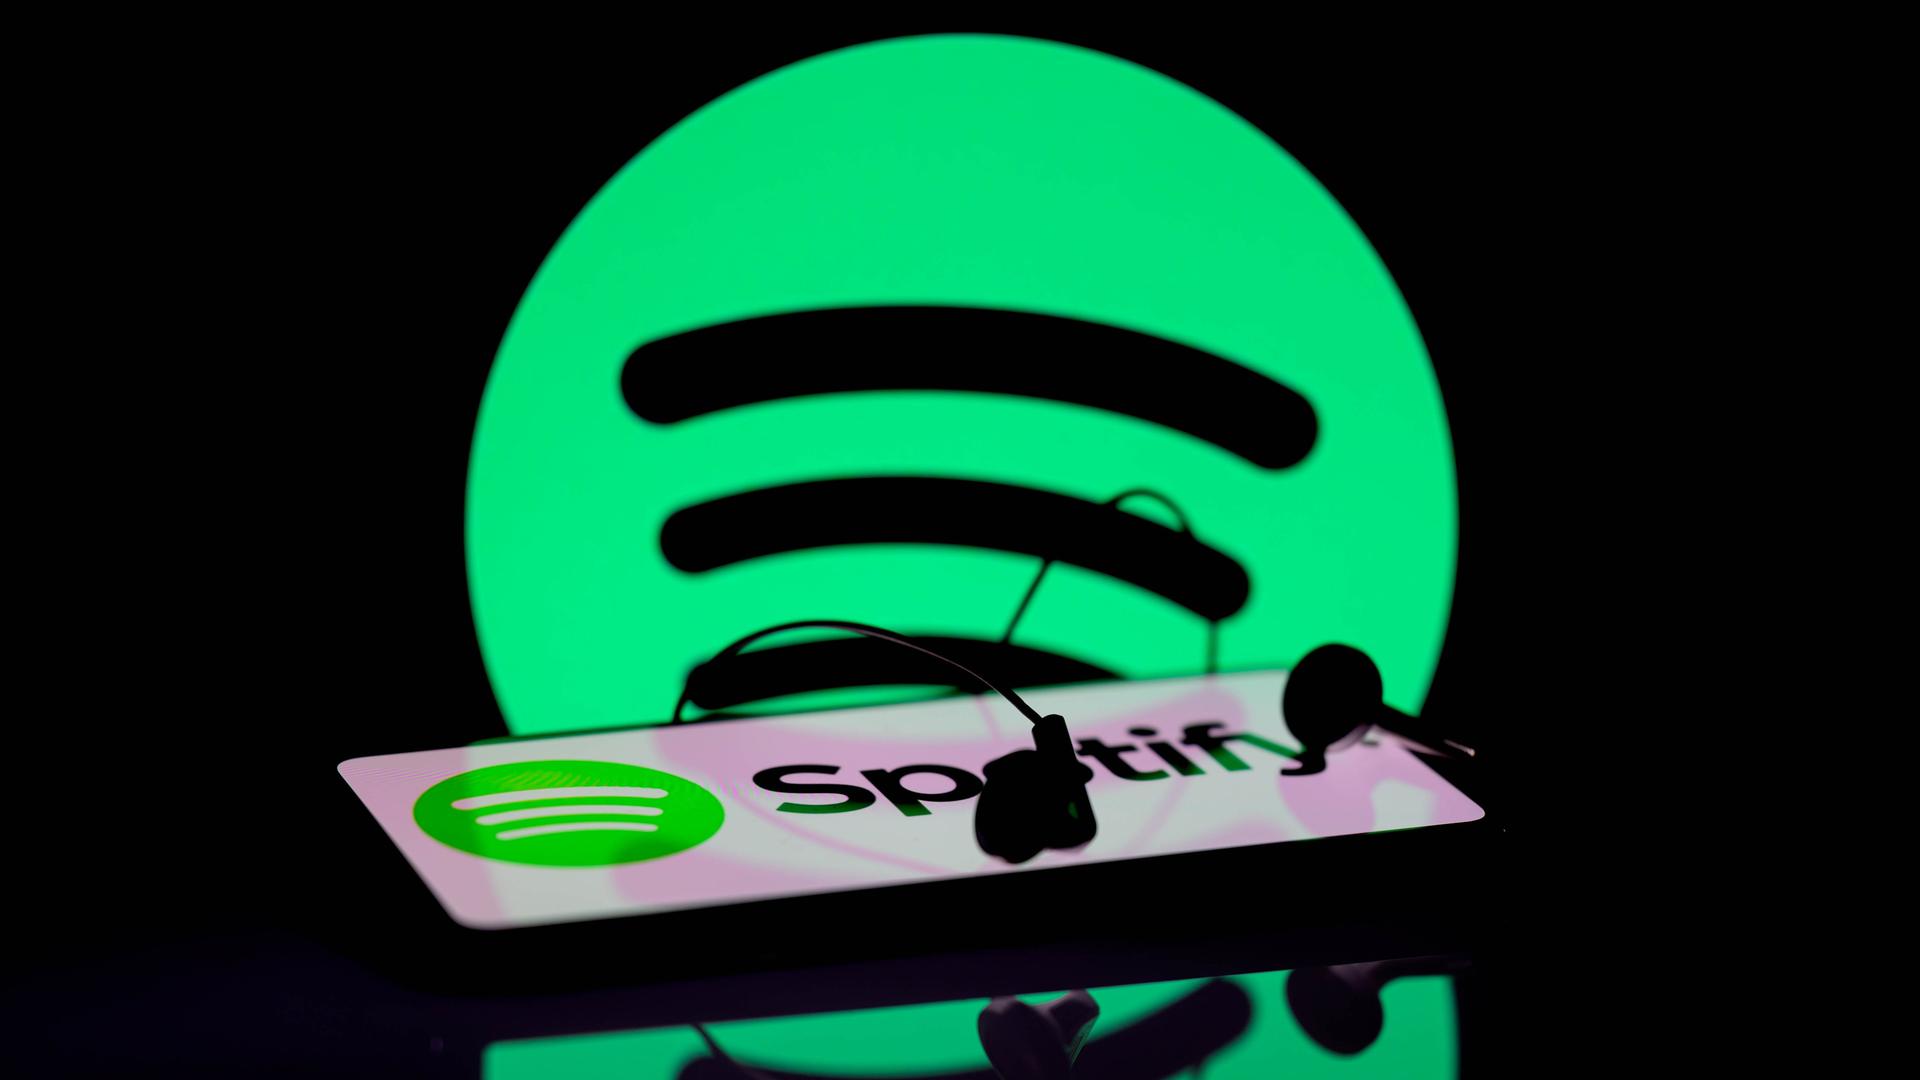 Das Spotify-App wird auf einem Smartphone angezeigt. Im Hintergrund ist das Spotify-Symbol zu sehen.